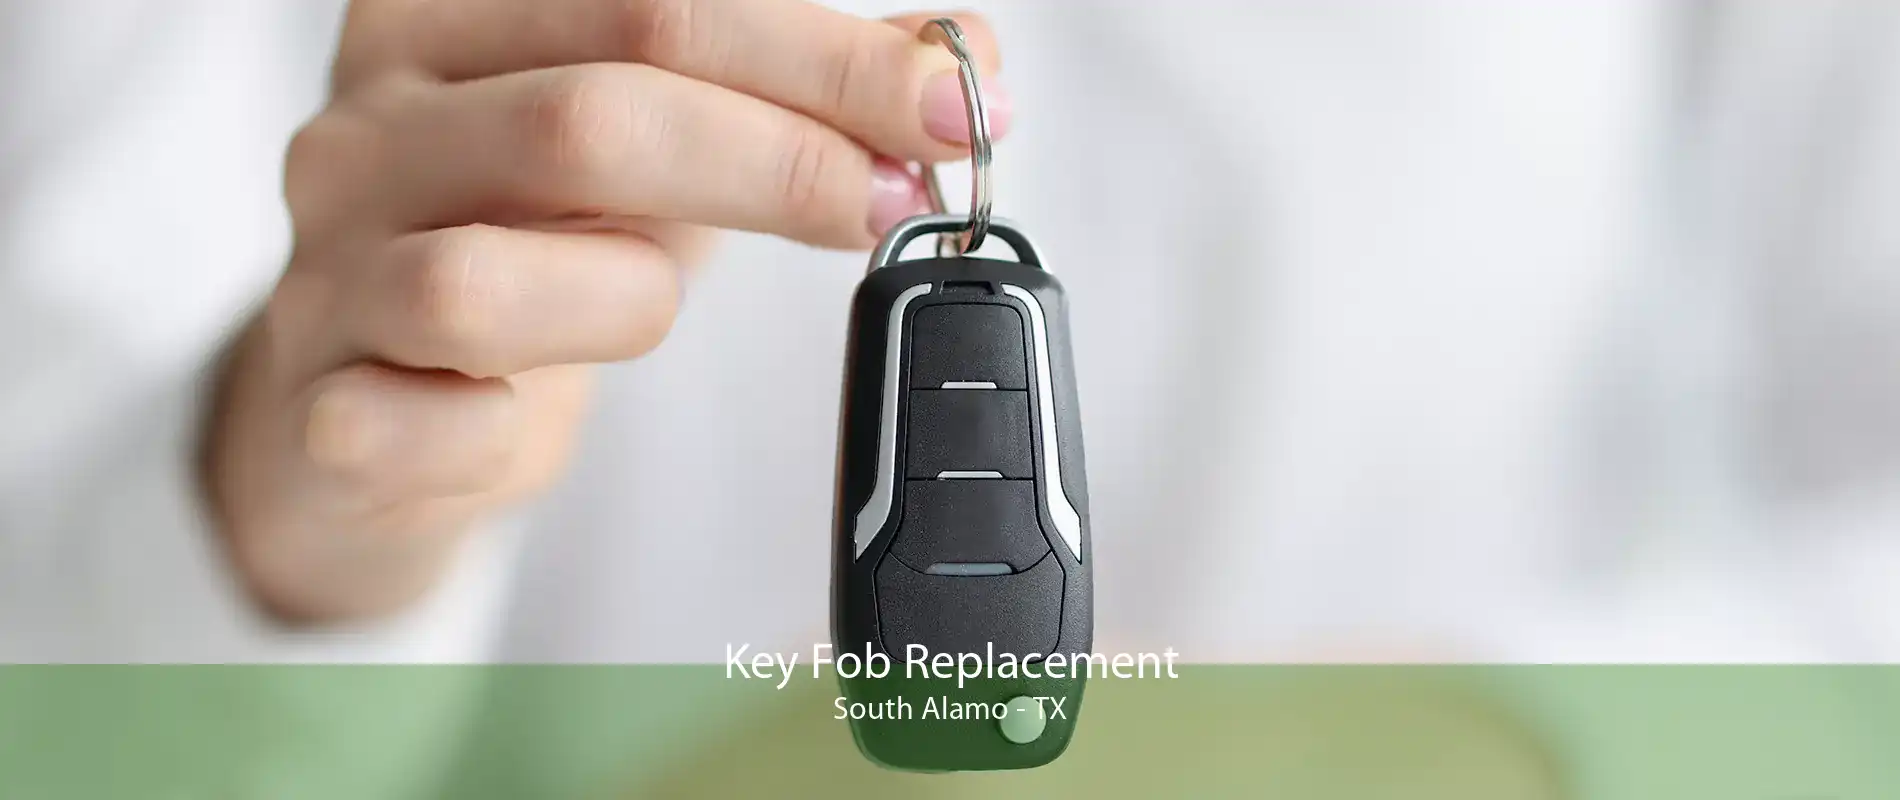 Key Fob Replacement South Alamo - TX